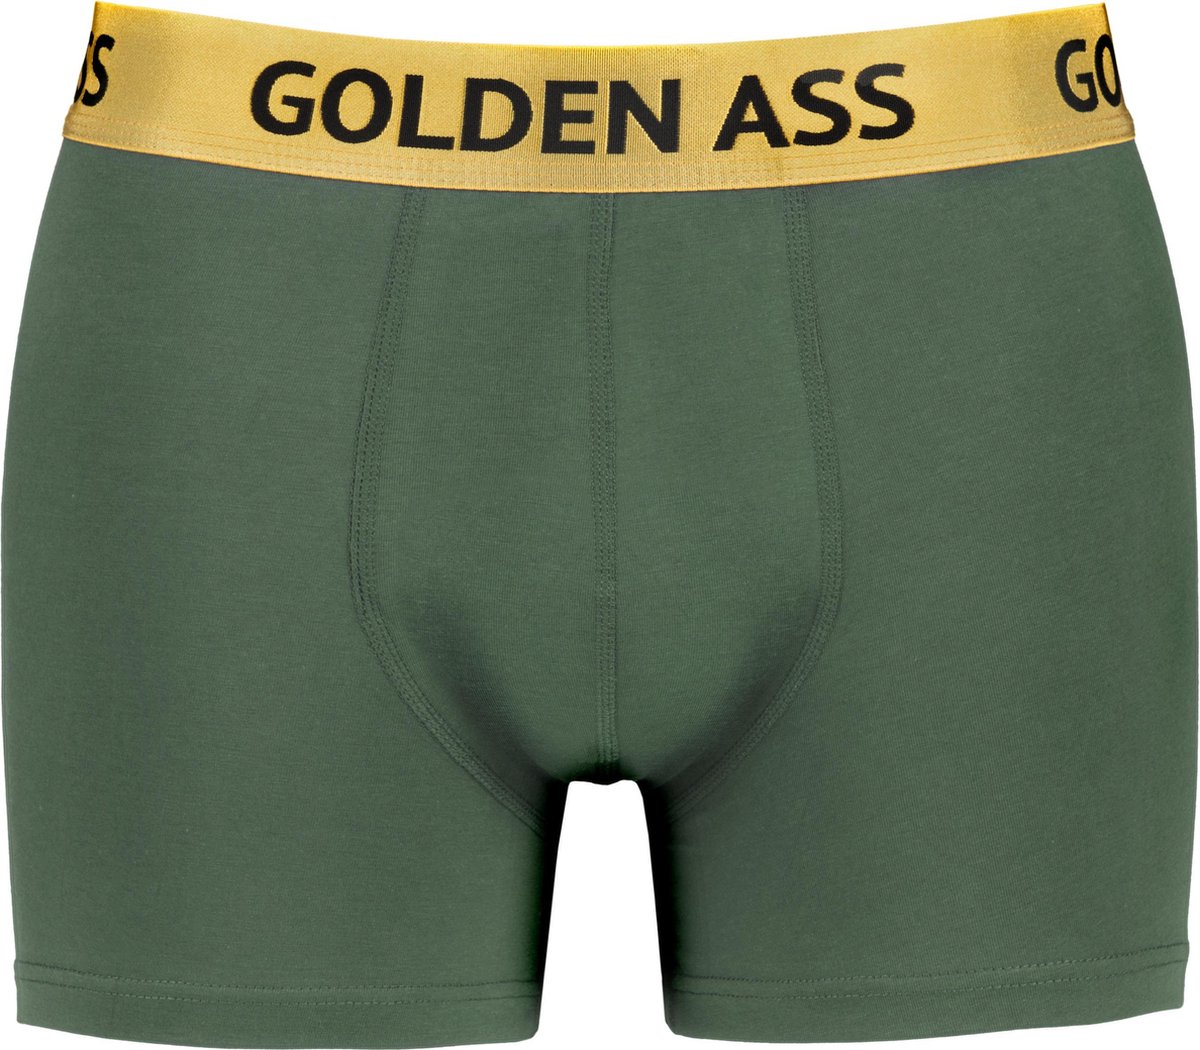 Golden Ass - Heren boxershort groen S